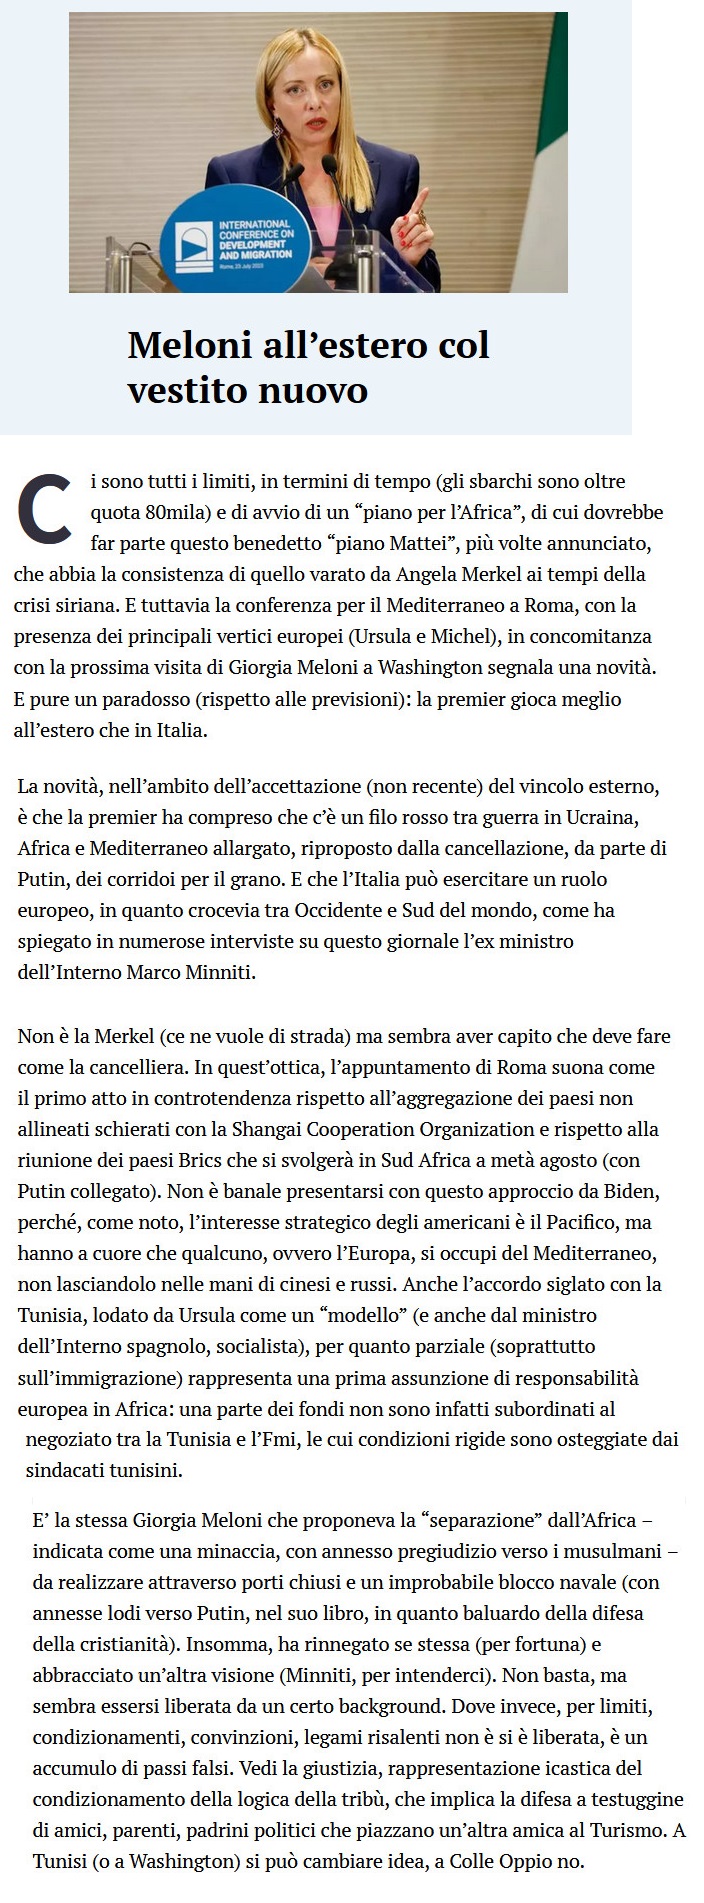 GIORGIA MELONI e compania bella - Pagina 3 Meloni74